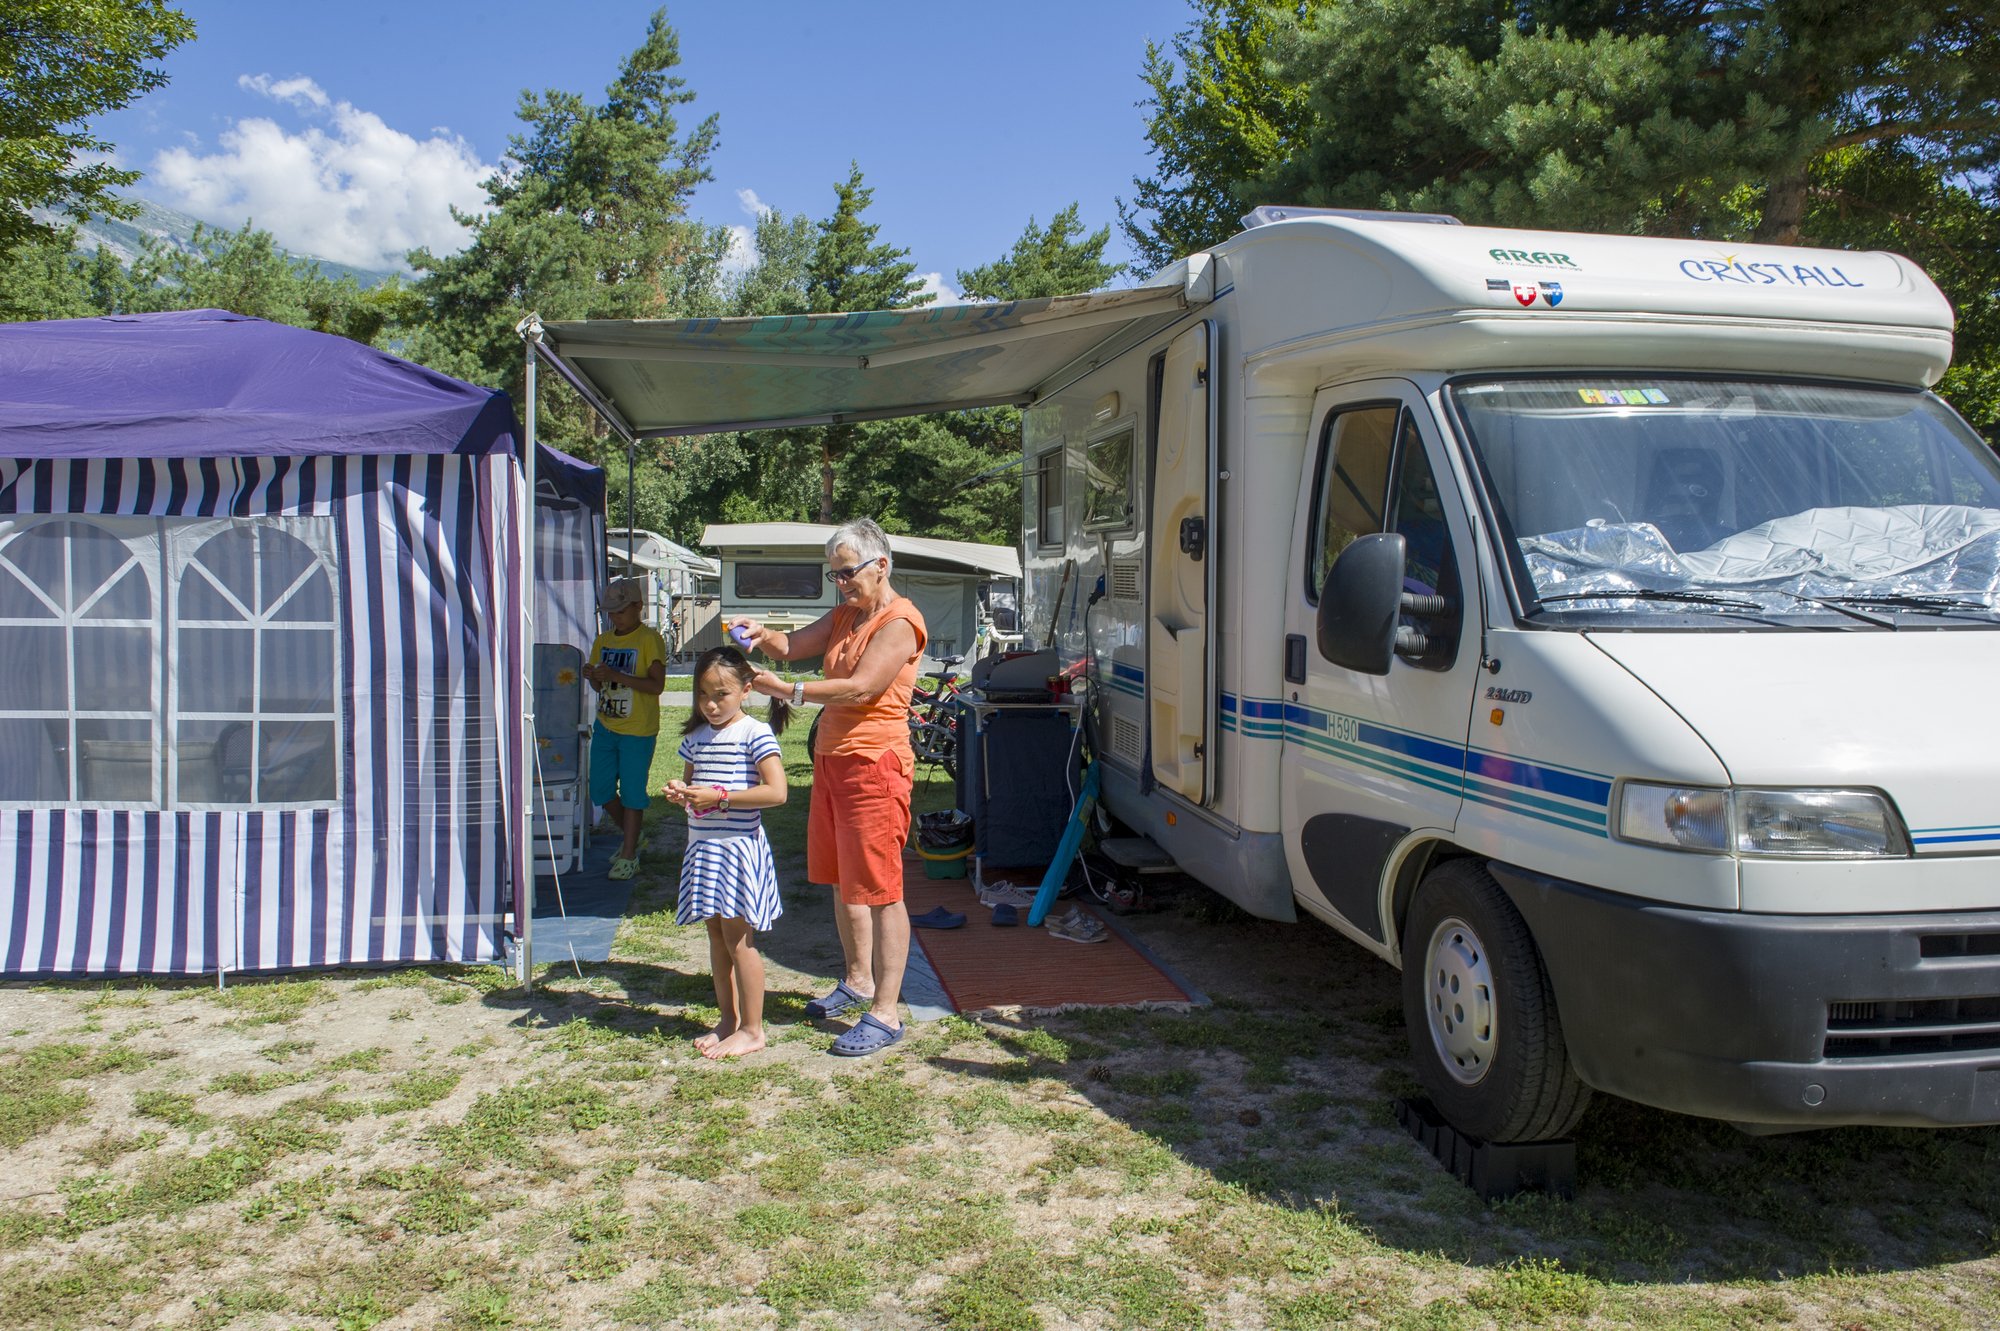 Le canton de Neuchâtel sera-t-il submergé par les camping-cars cet été (photo d'illustration)?